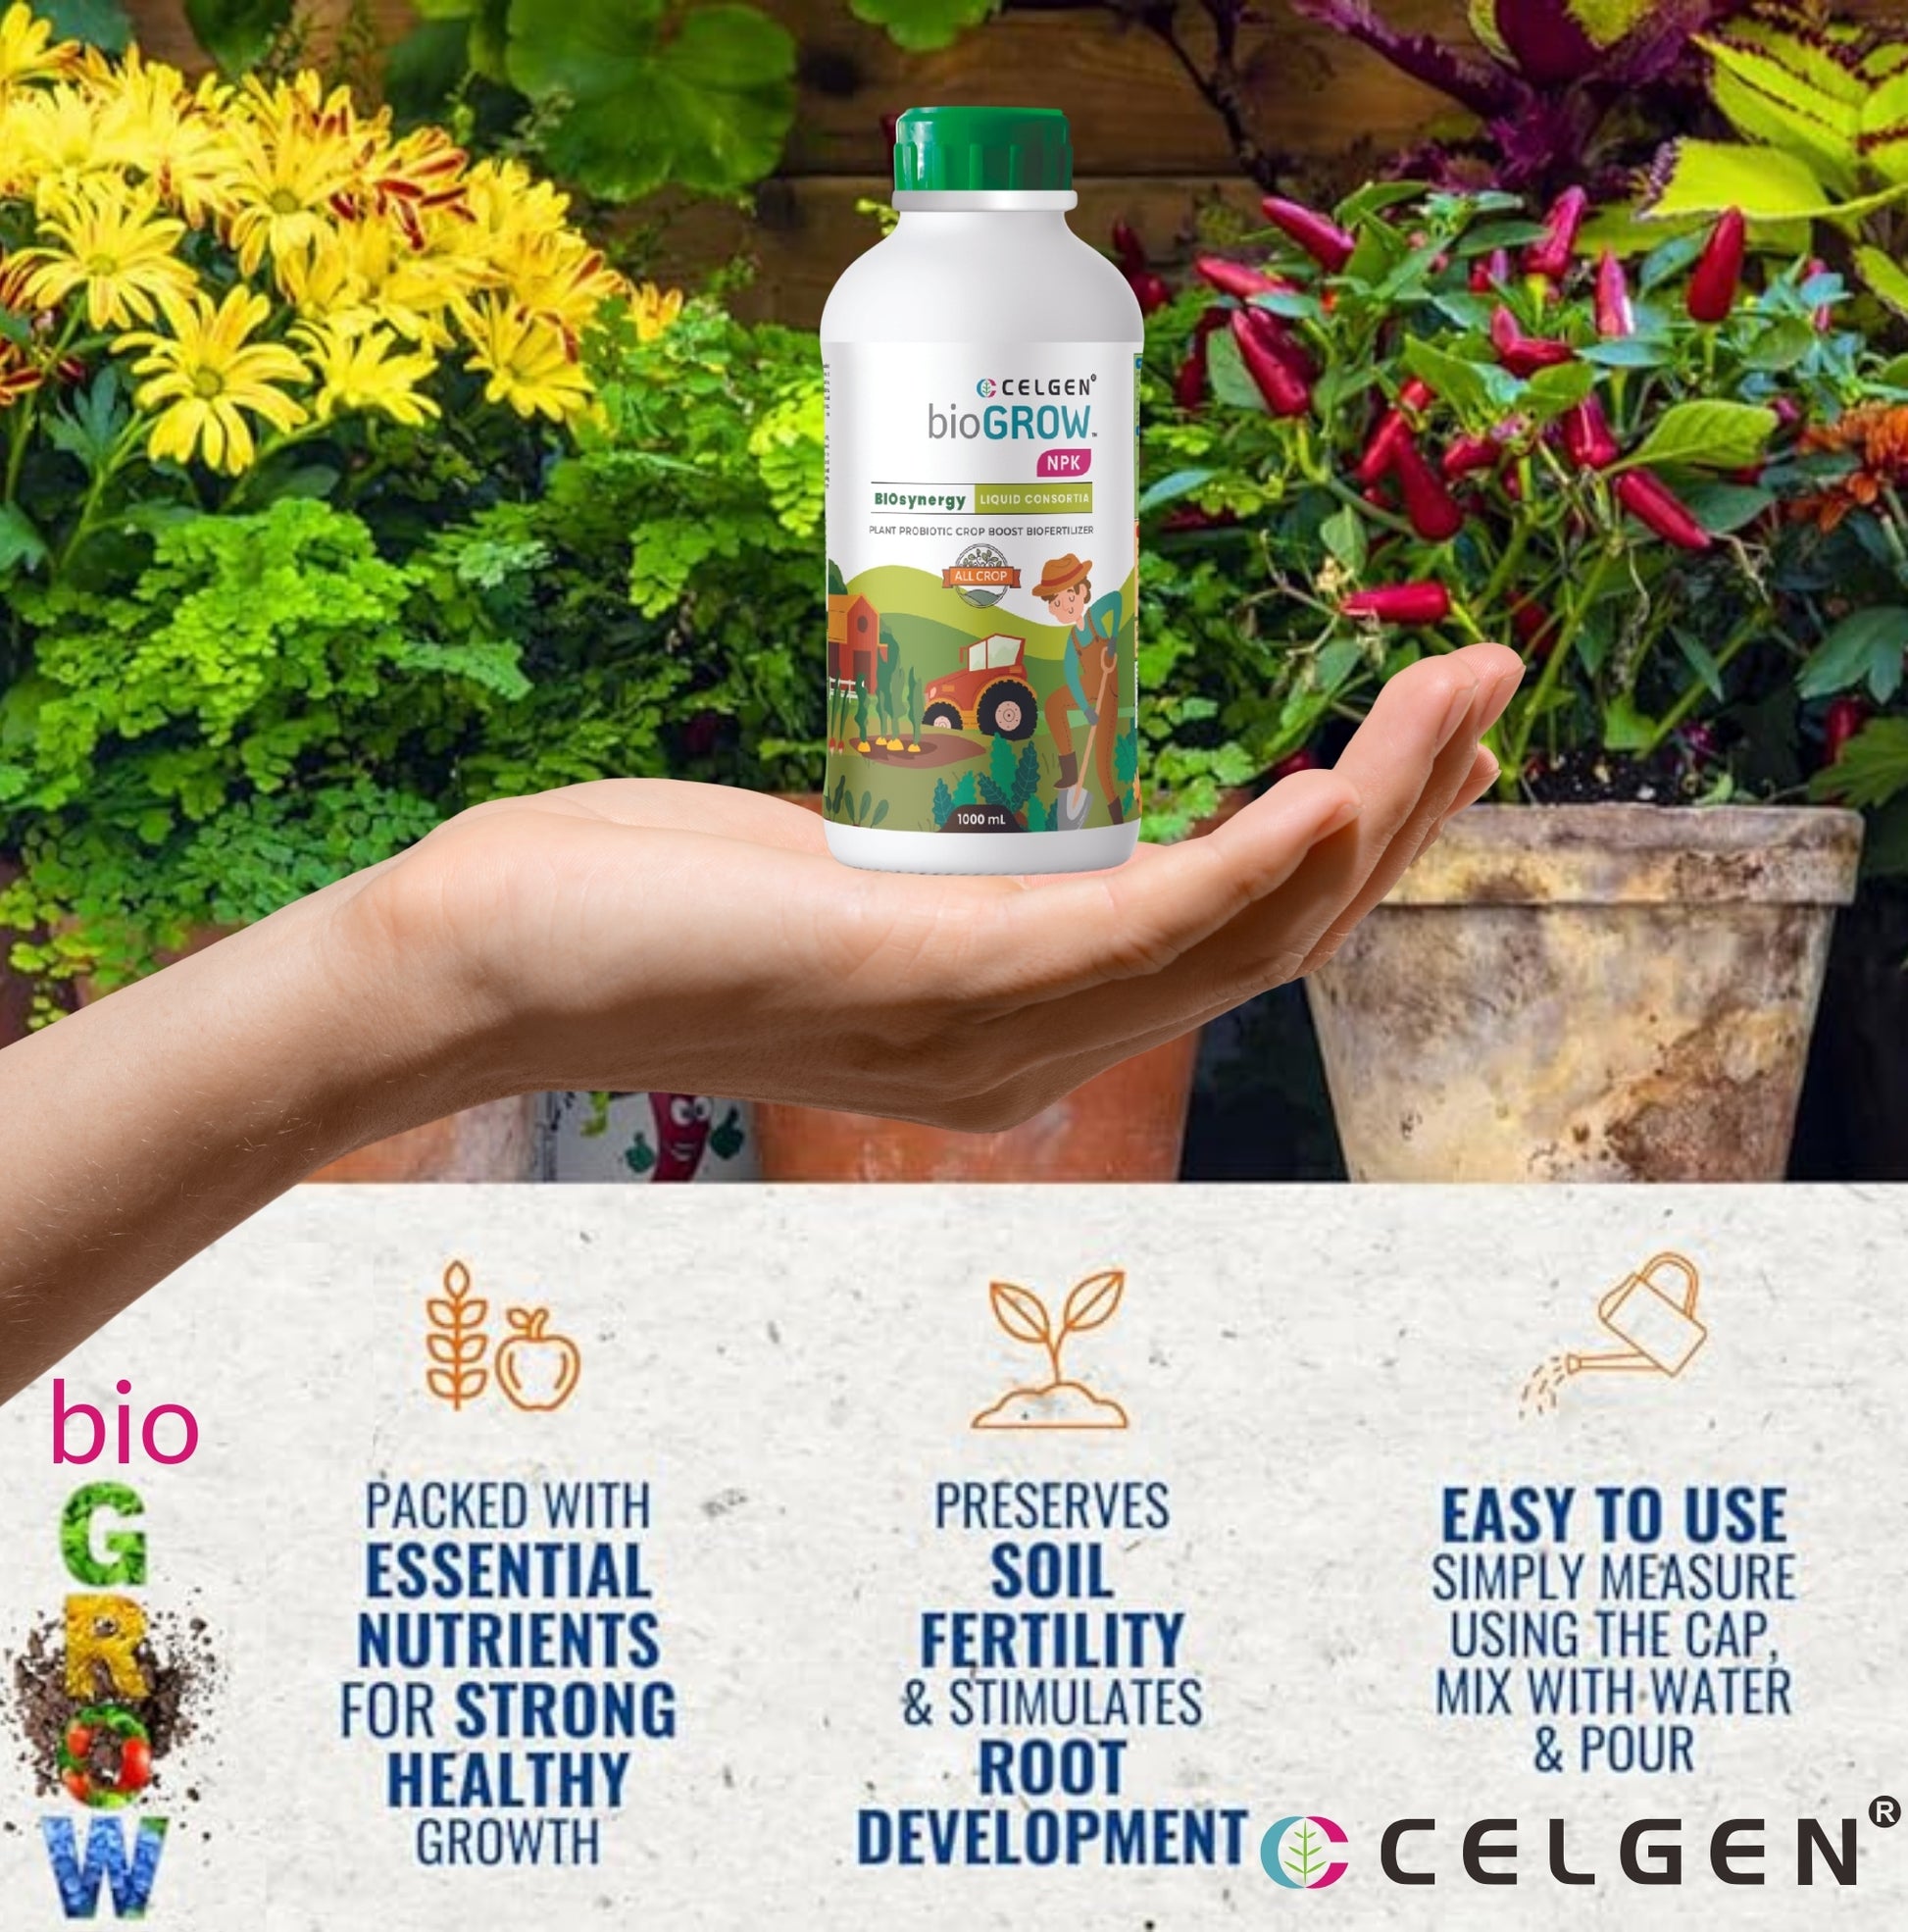 Celgen-bioGROW NPK Liquid Plant Nutrient Booster